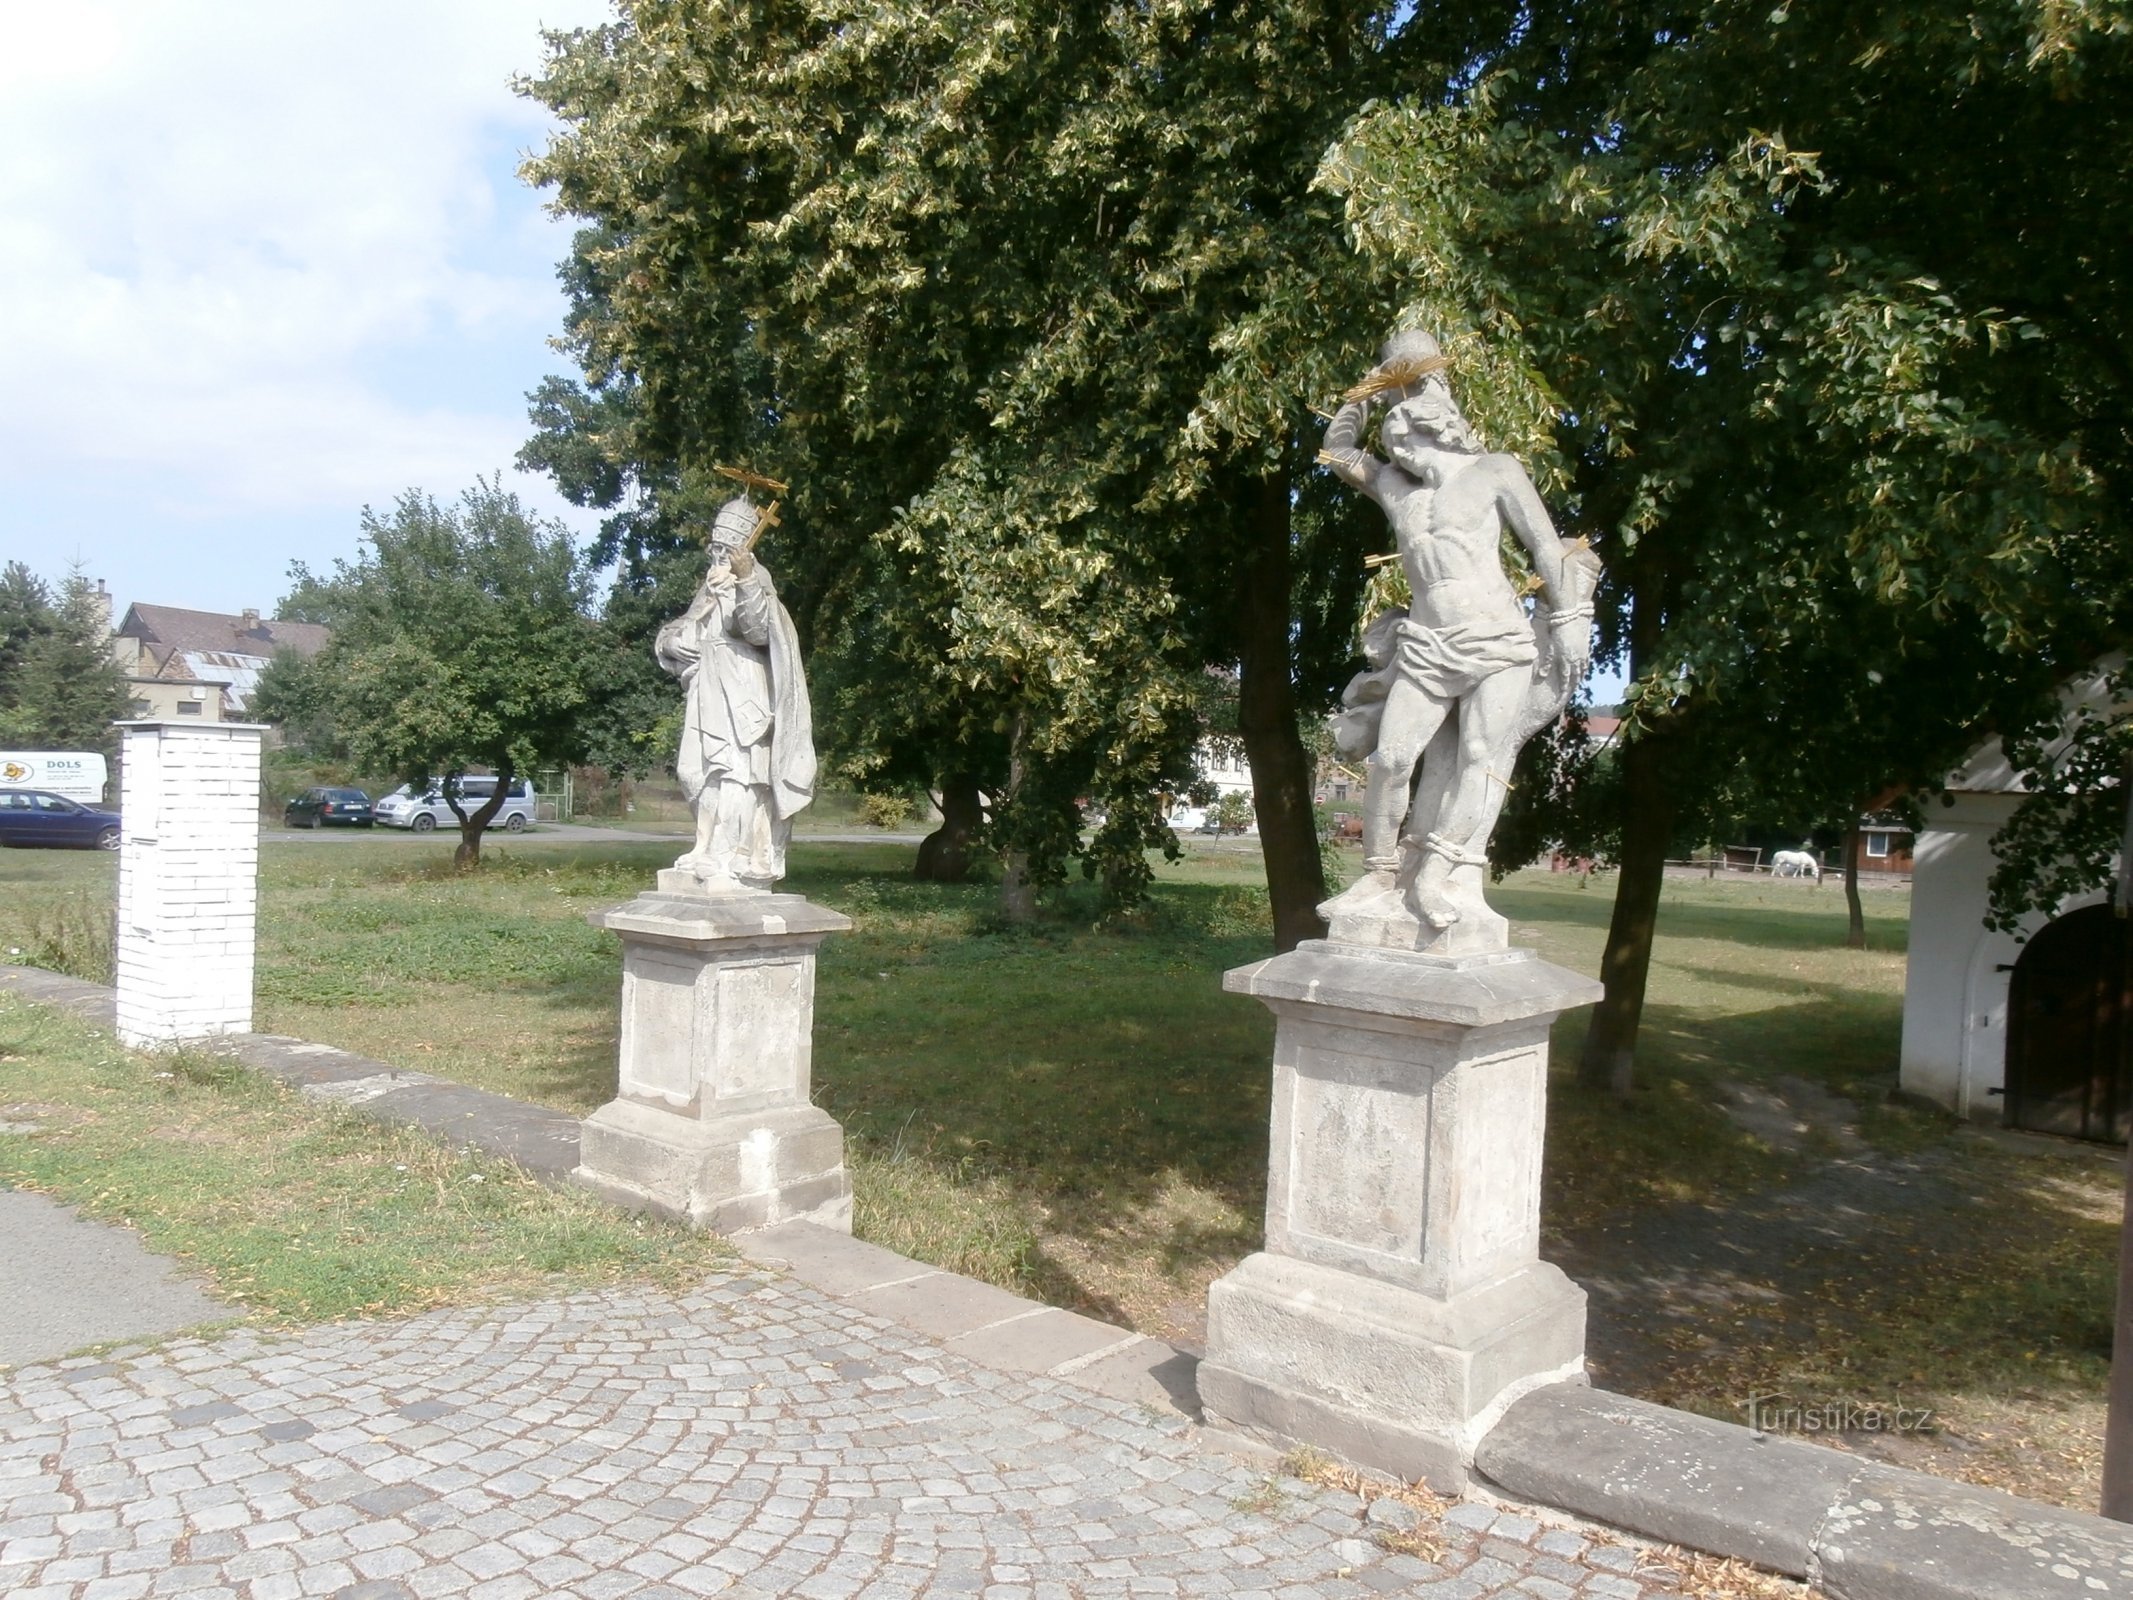 2. Statyer av St. Fabian och St. Šebestián framför den tidigare ingångsporten till kyrkogården